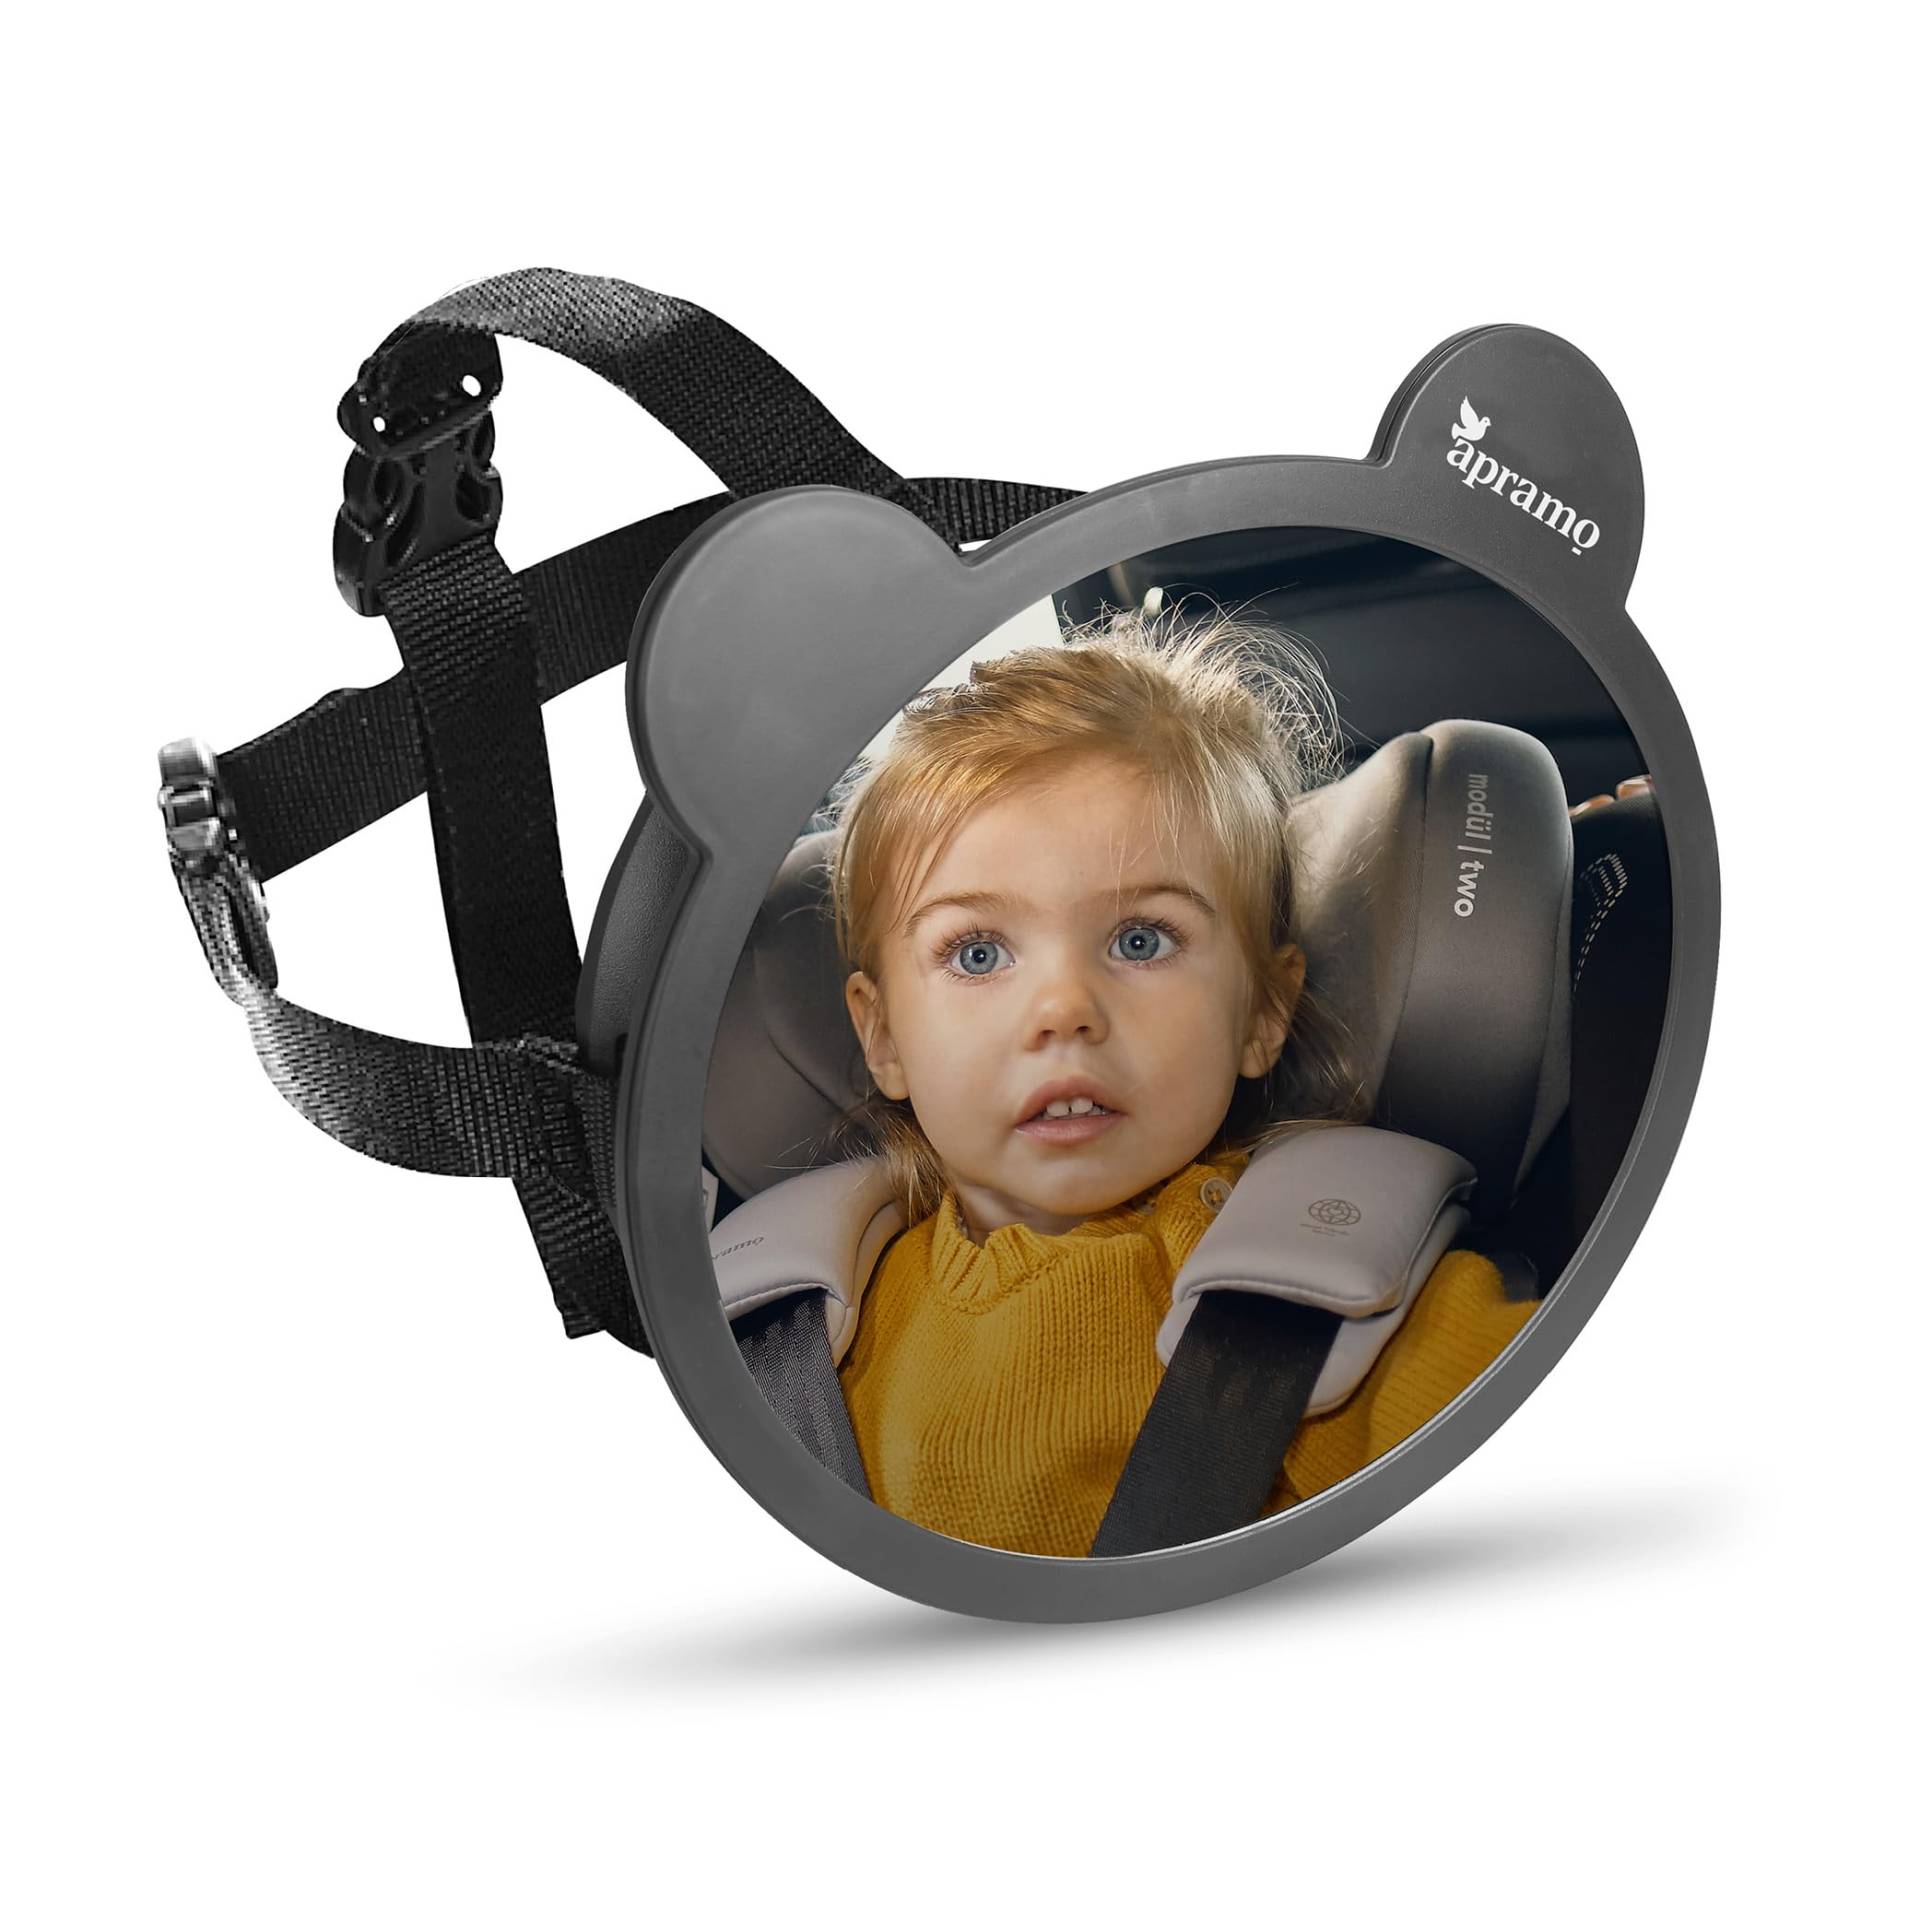 APRAMO Baby Rücksitzspiegel 360° Schwenkbar Auto Baby Spiegel, 100% Bruchsicherer Rückspiegel für Kindersitz und Babyschale, Geeignet für allerlei Kopfstützen, Autospiegel in optimaler Größe von APRAMO